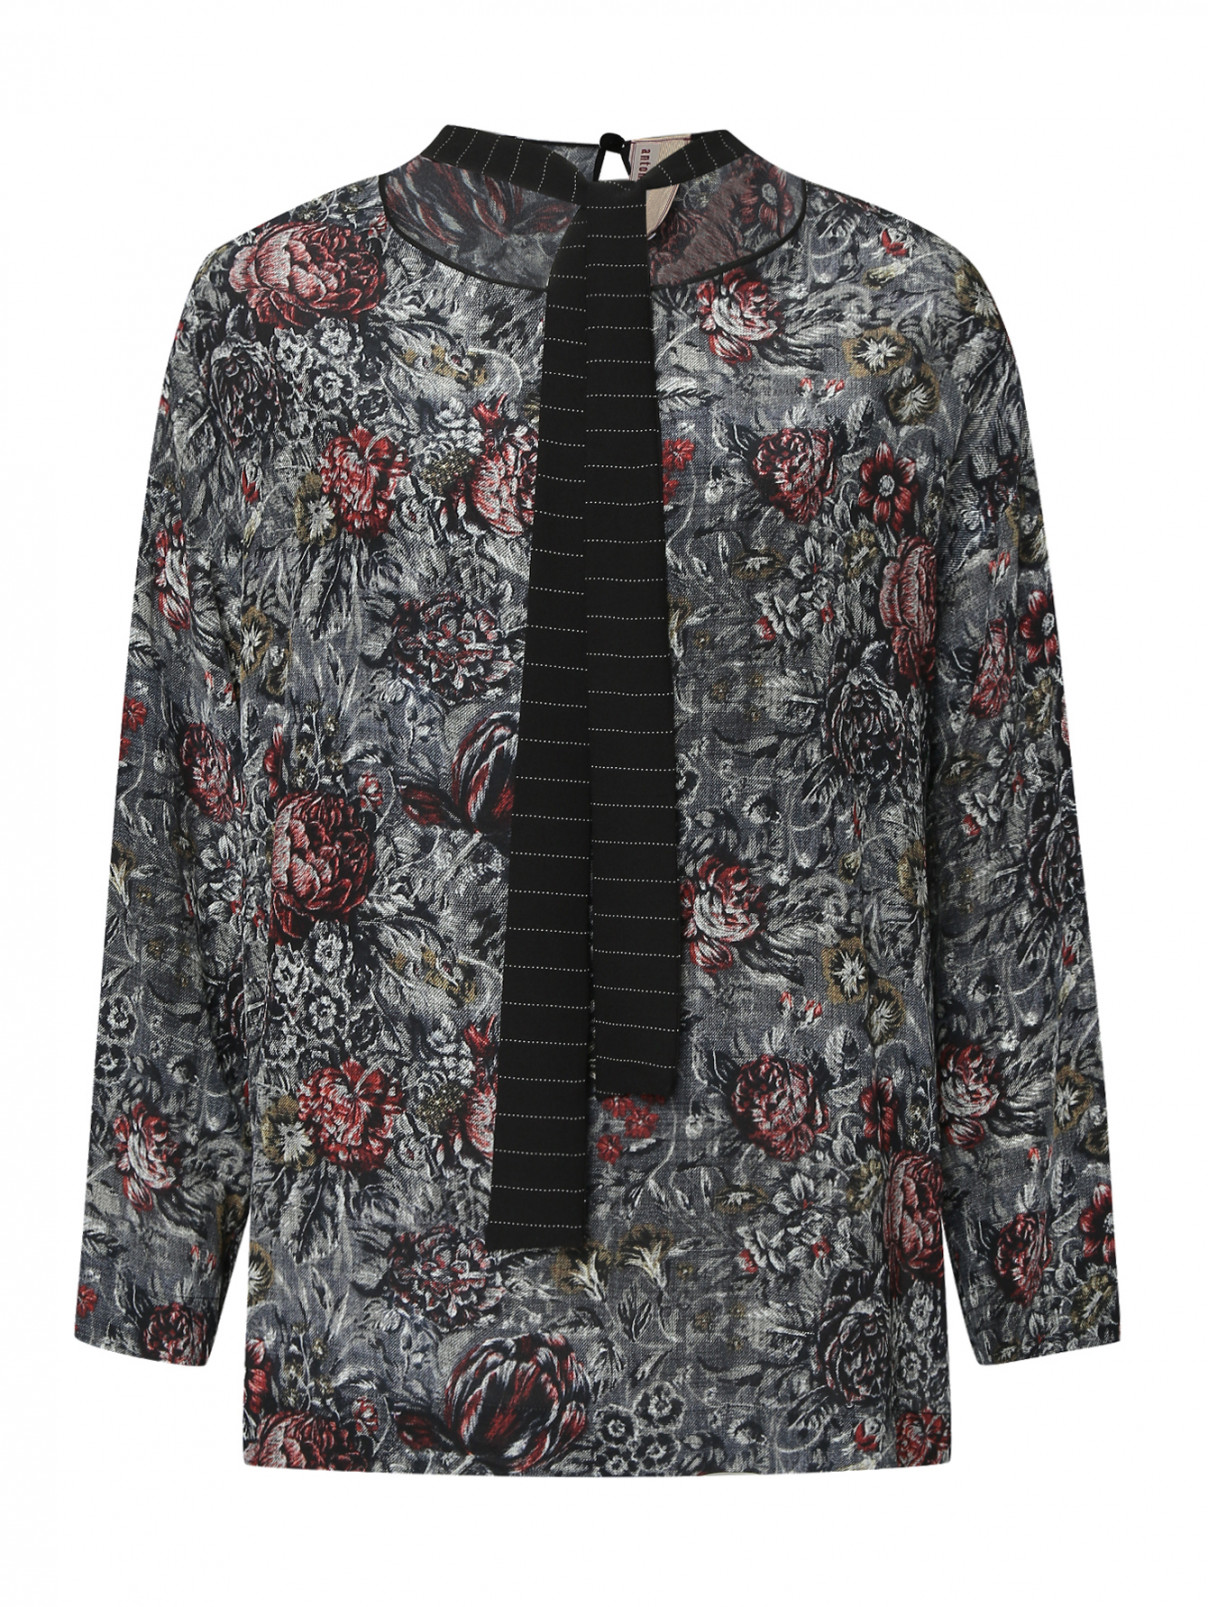 Блуза с цветочным принтом Antonio Marras  –  Общий вид  – Цвет:  Серый